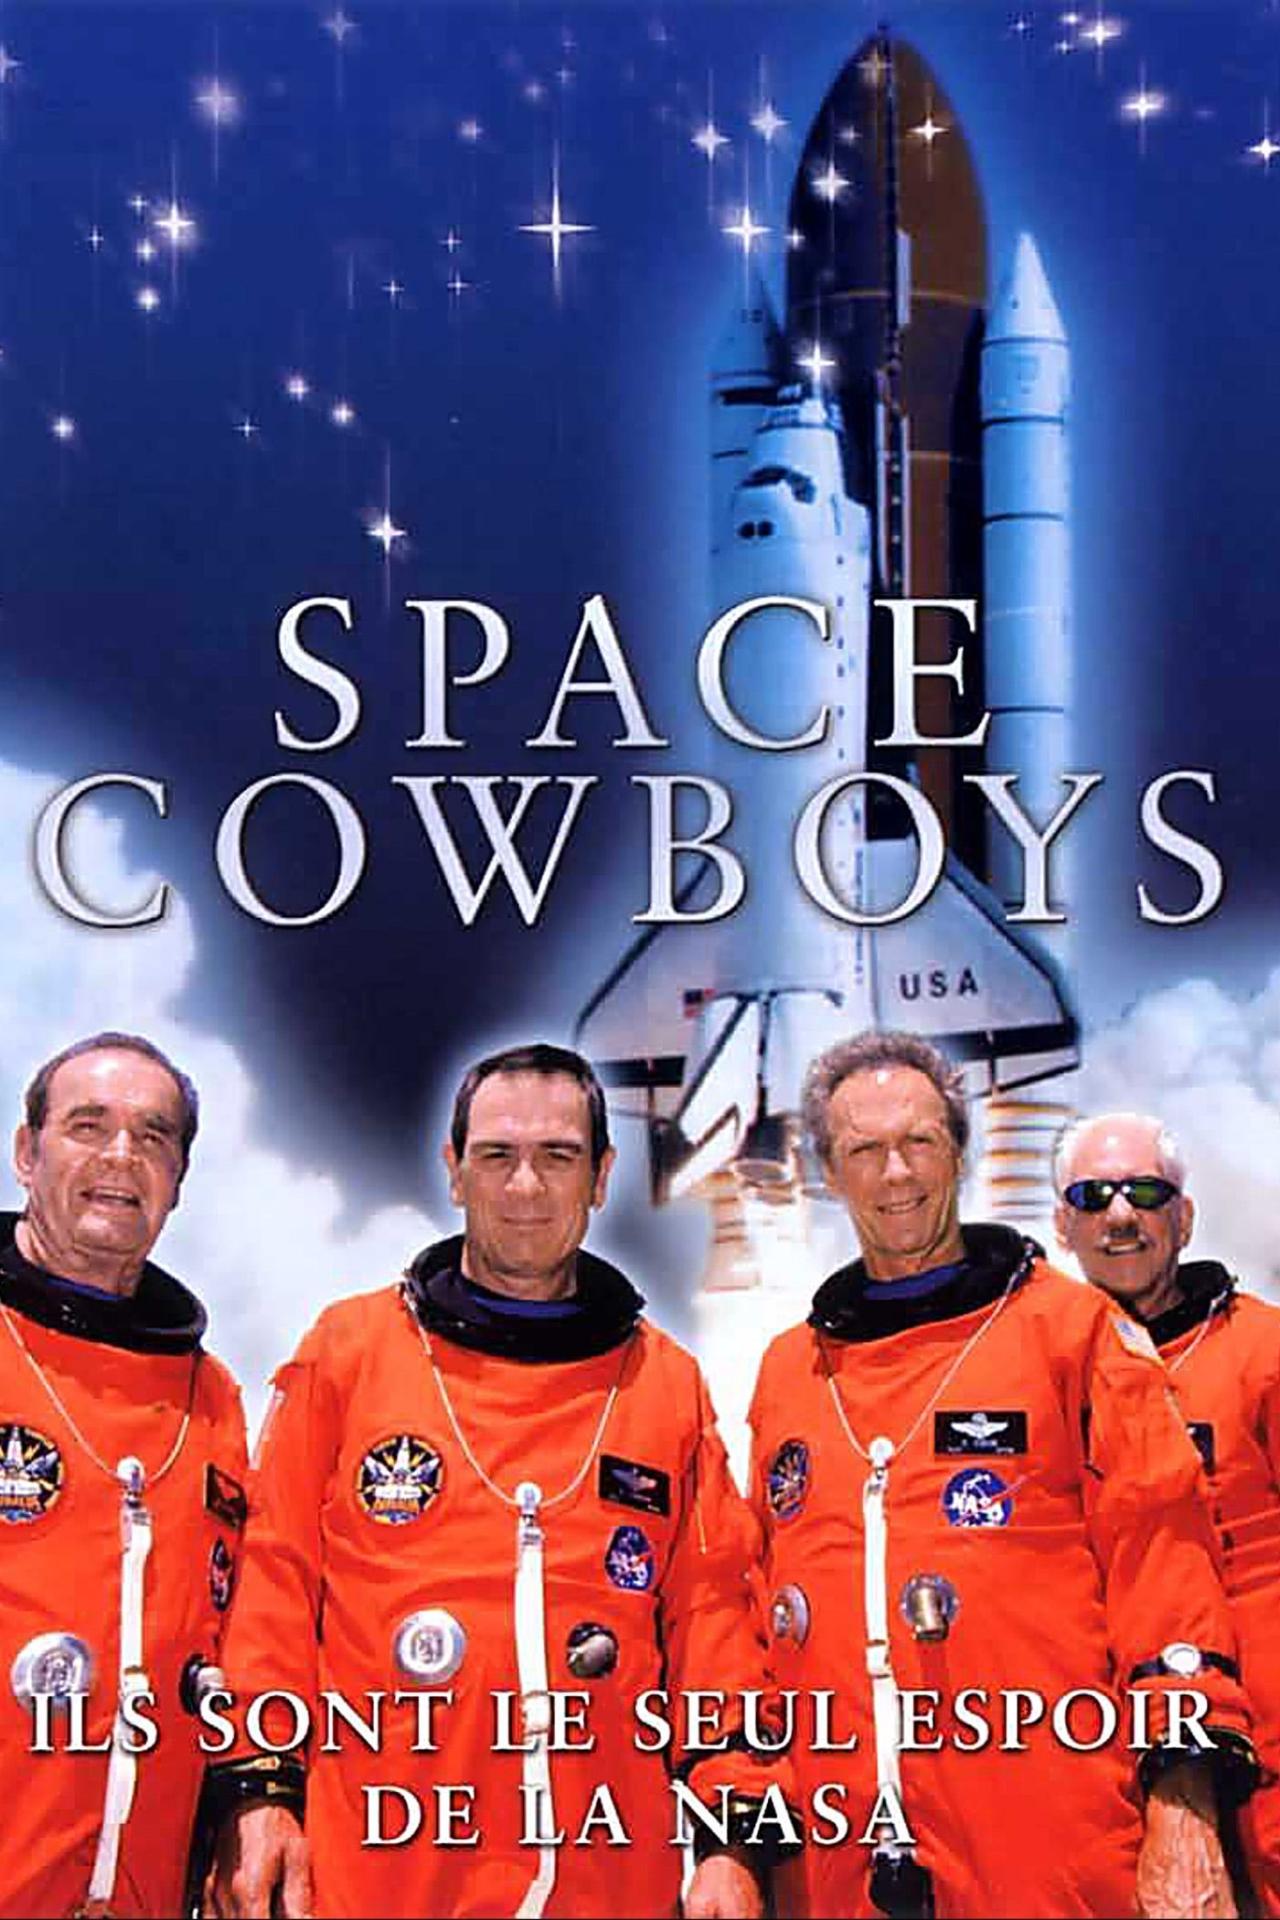 Space Cowboys est-il disponible sur Netflix ou autre ?